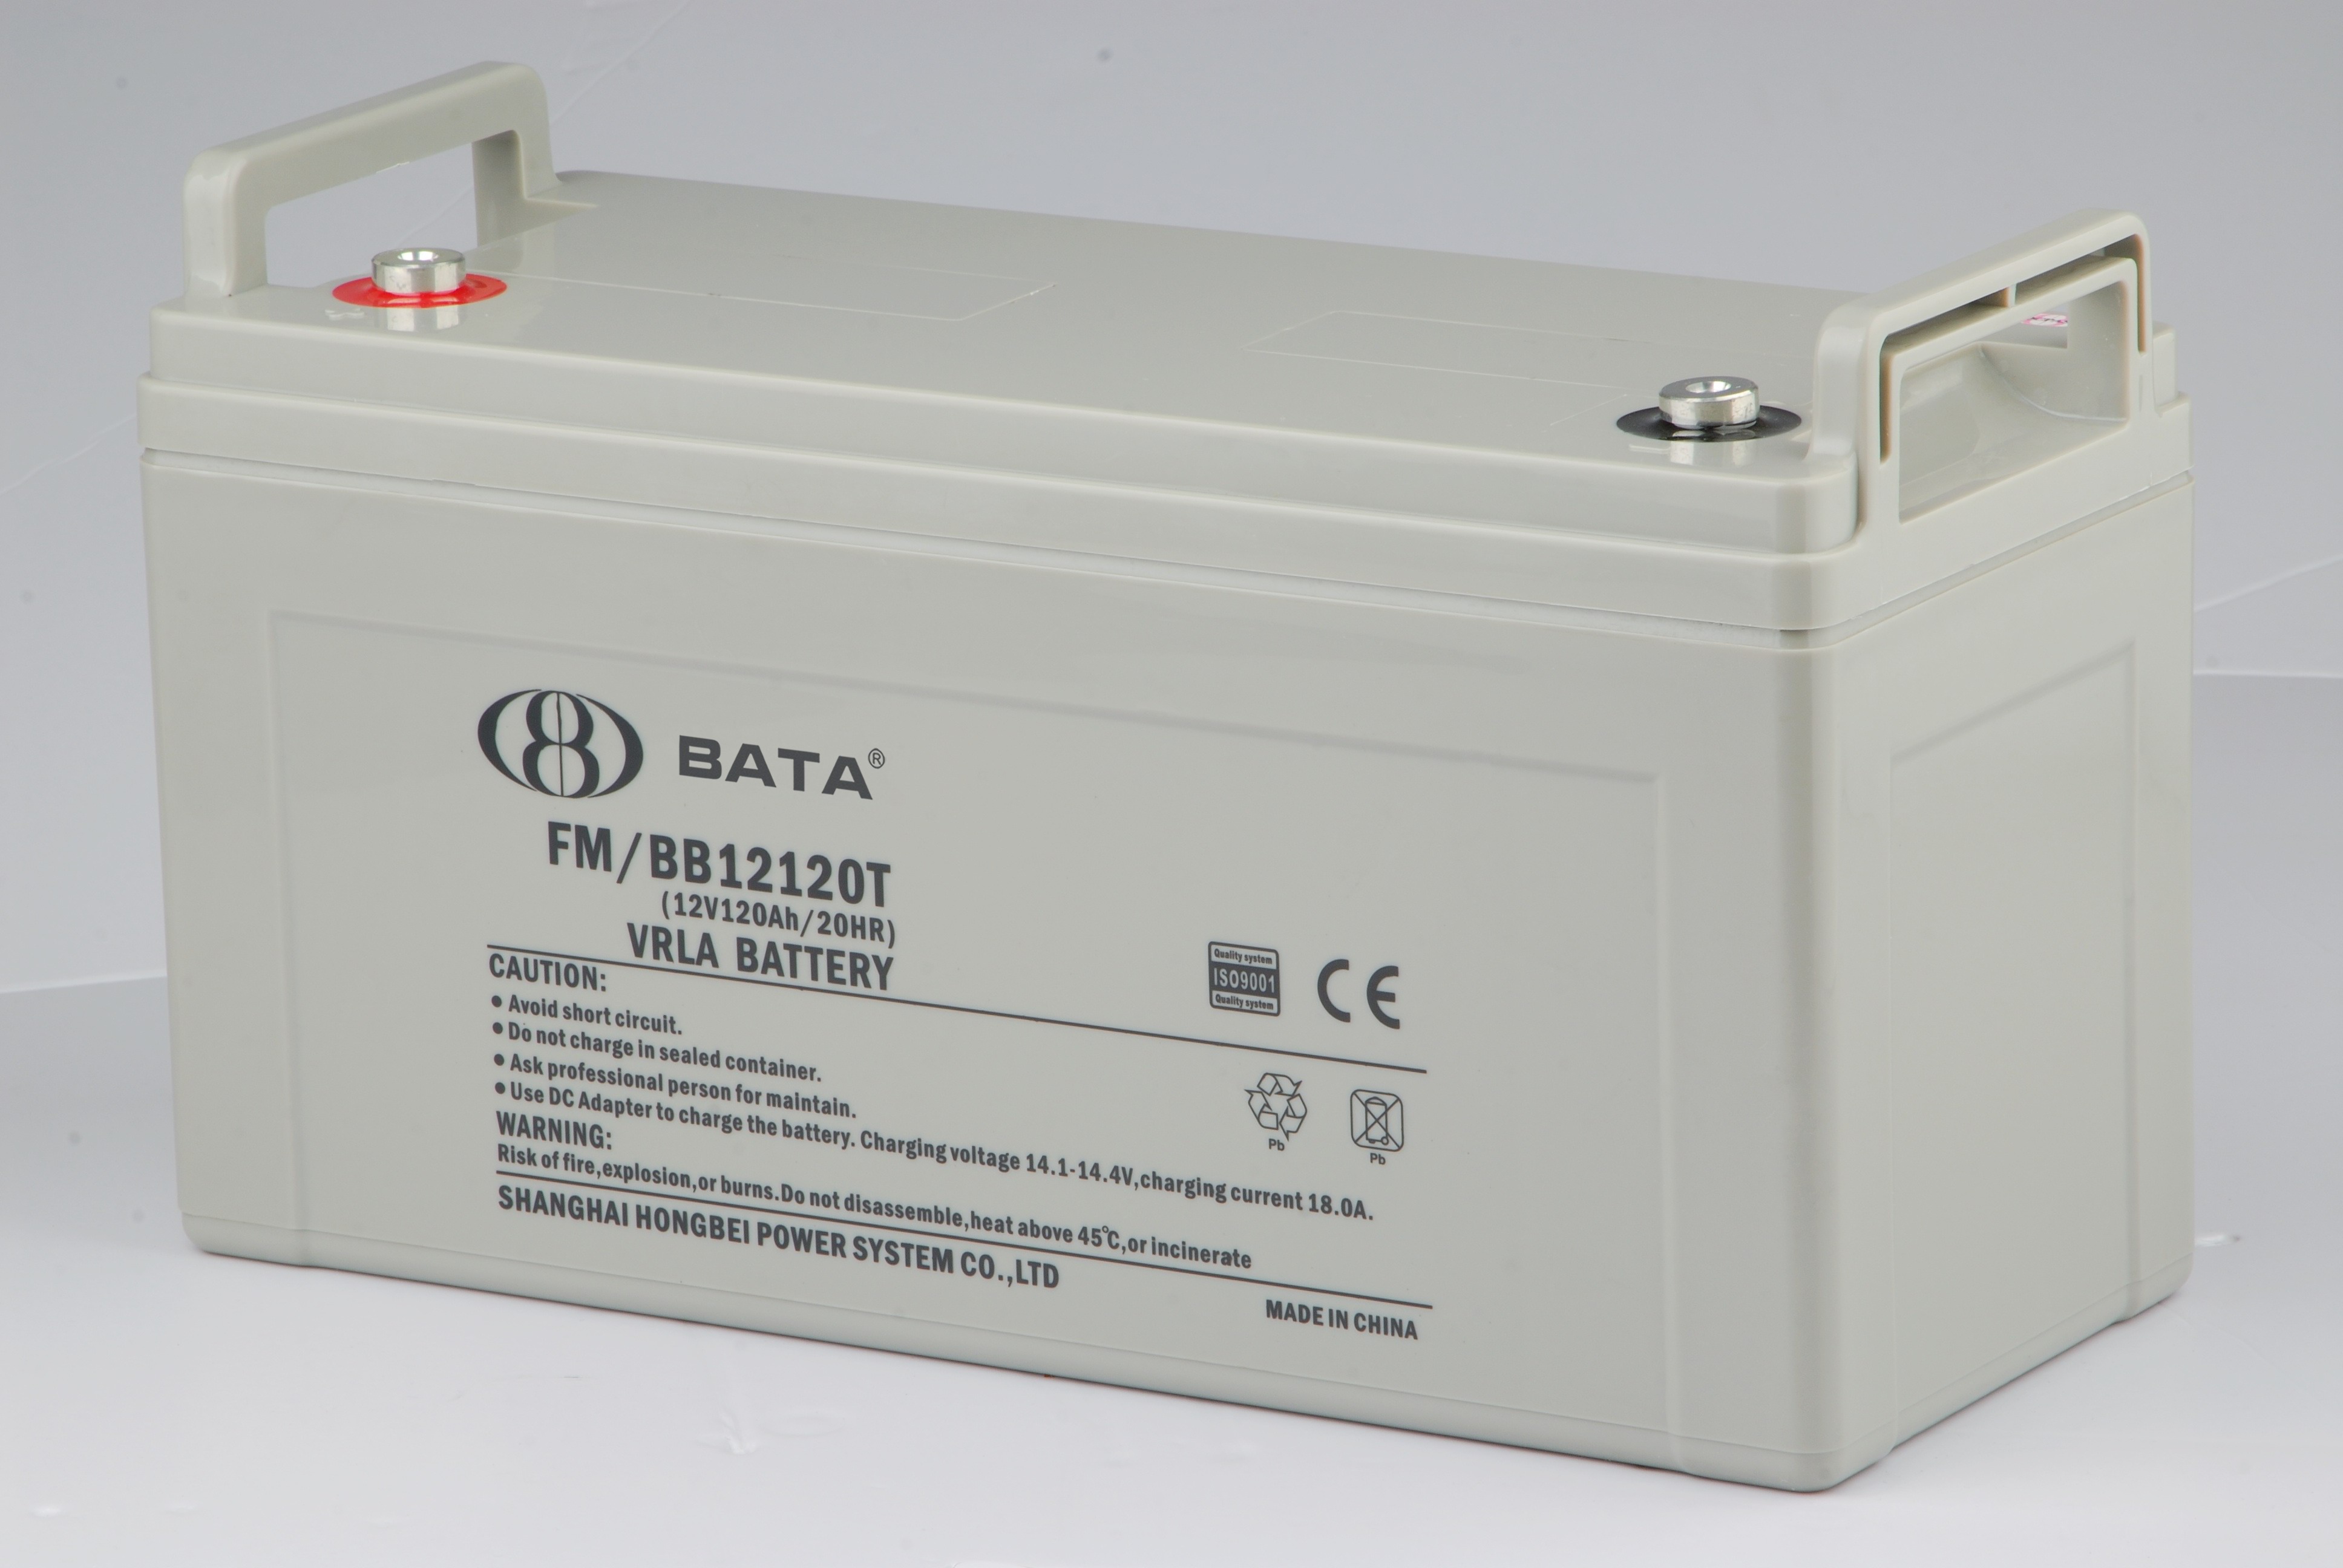 BABY鸿贝蓄电池FM/BB1265 12V6H/20HR UPS电源蓄电池